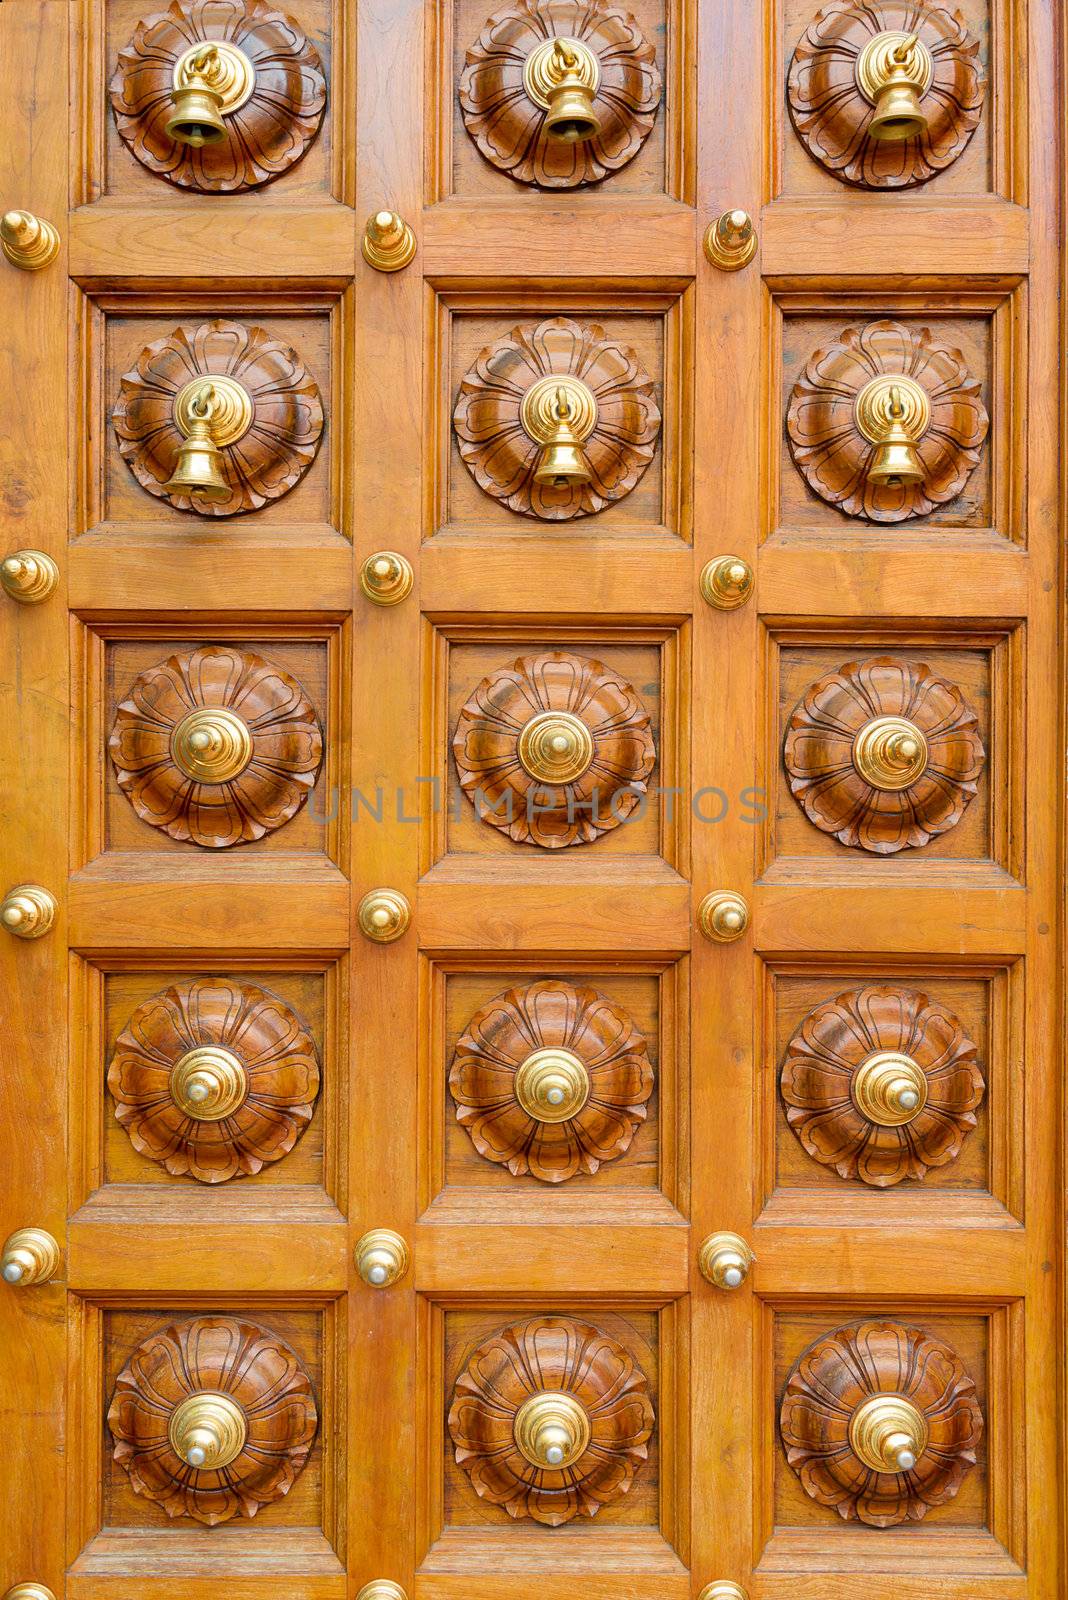 Temple door bells in india Hindu temple  by iryna_rasko